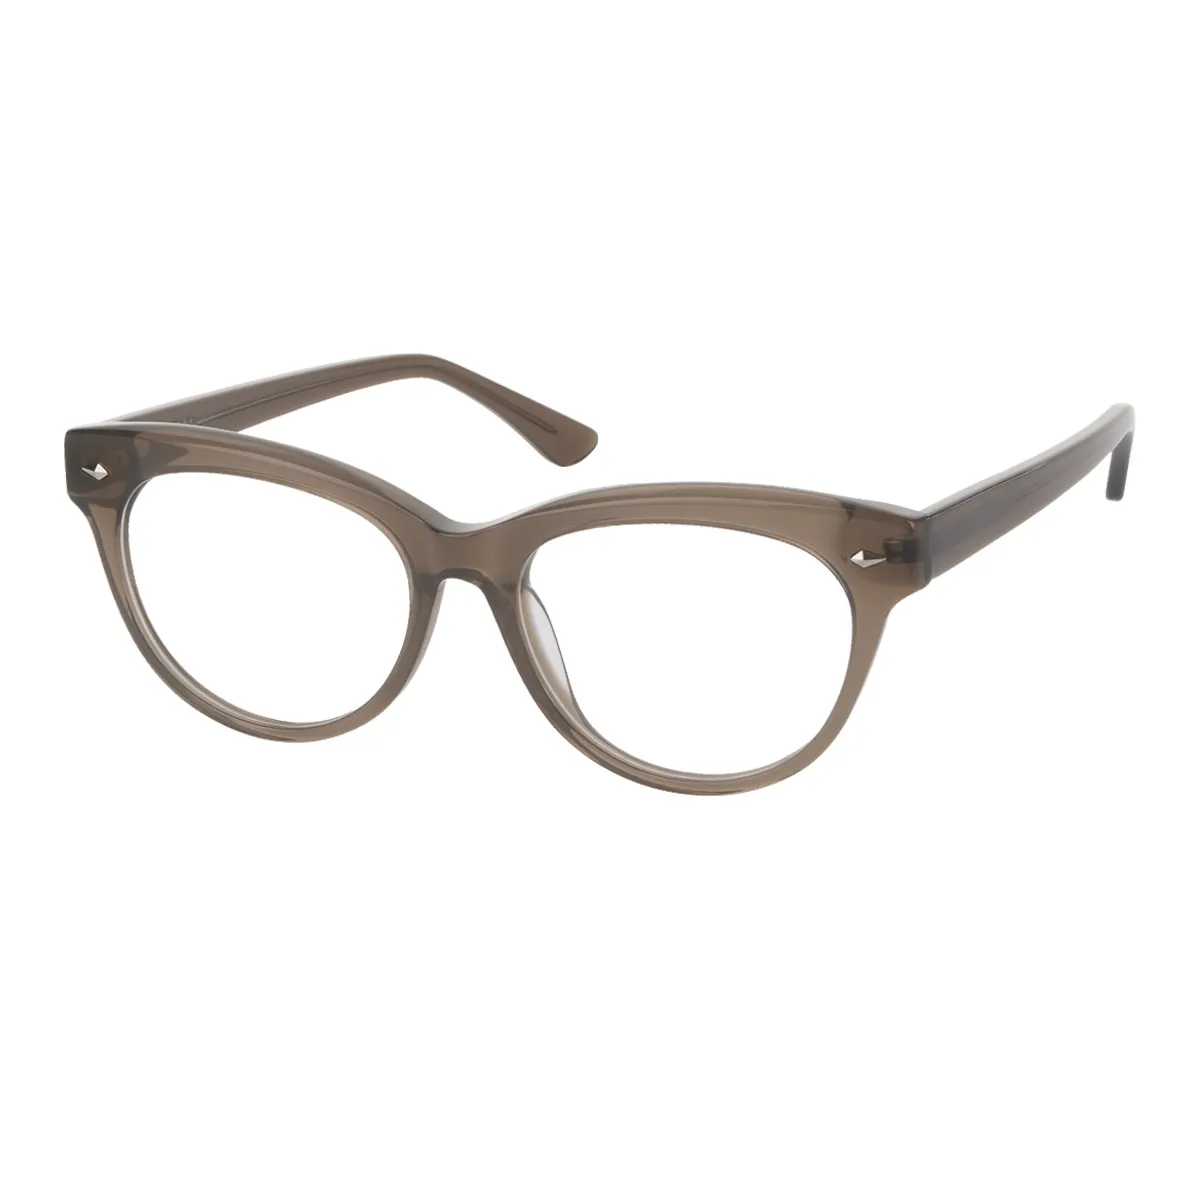 Classic Cat-eye Tortoiseshell Glasses for Women